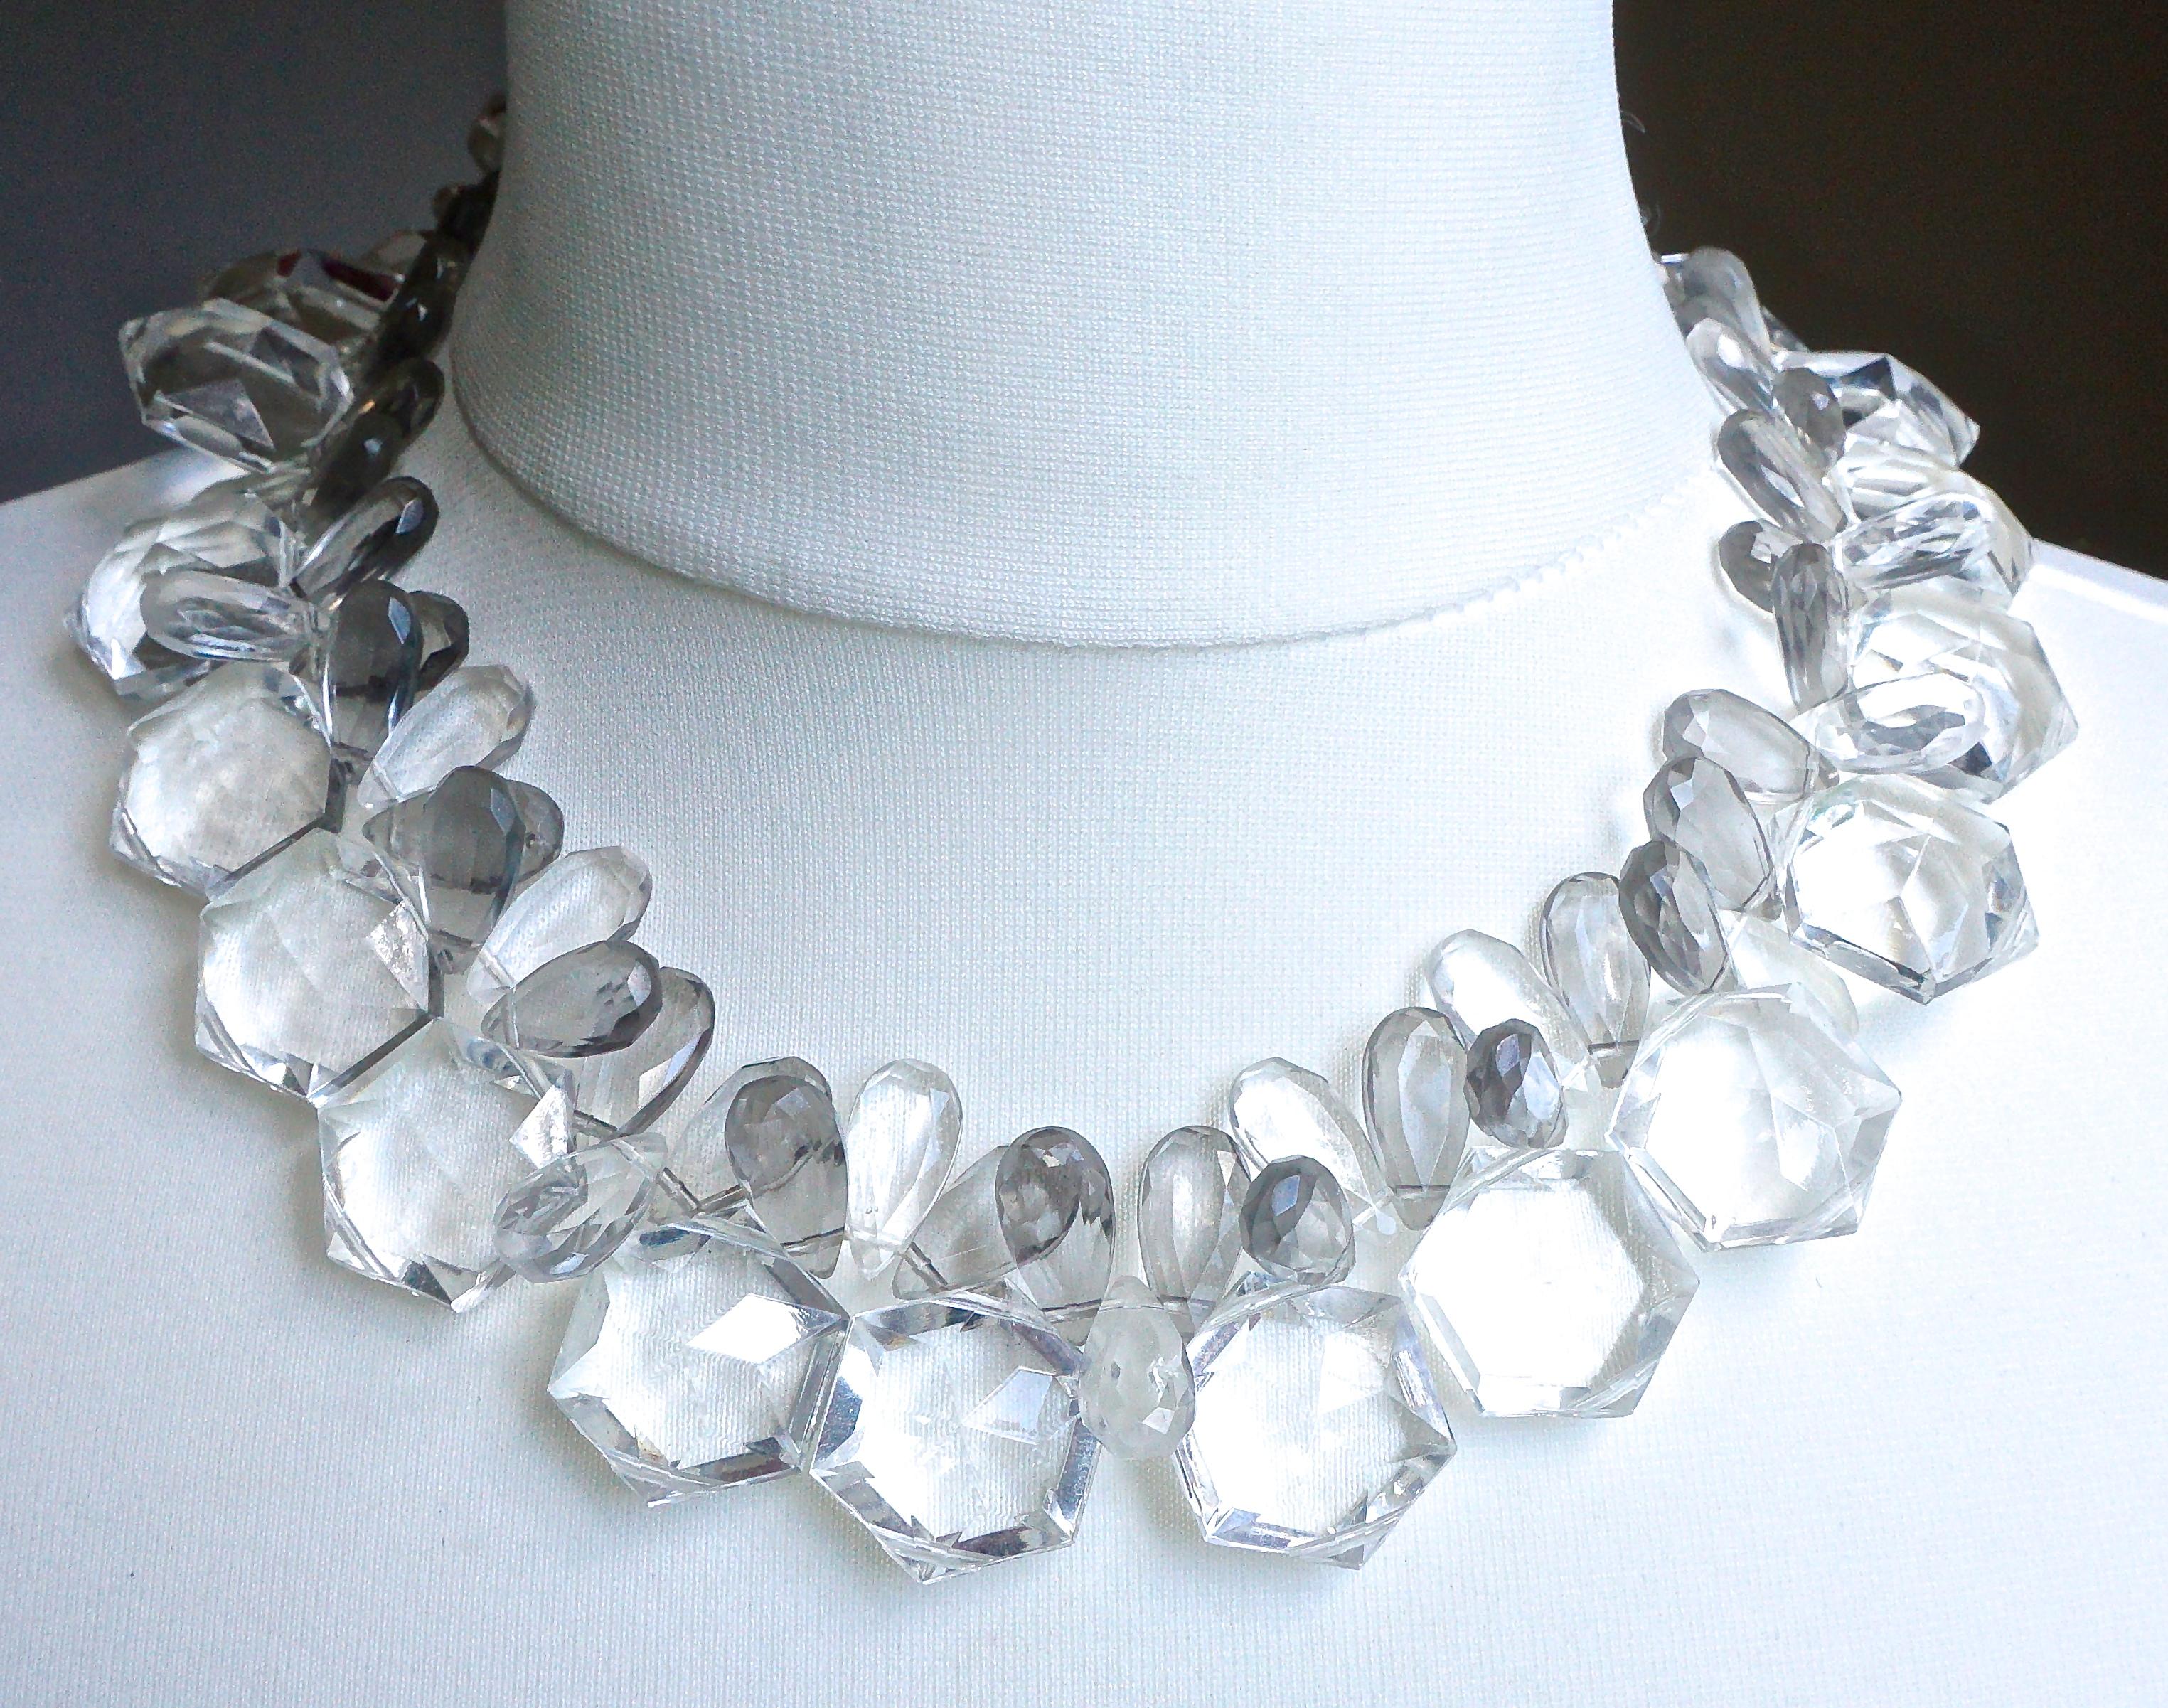 Un joli collier en plastique avec des perles hexagonales transparentes et des perles grises en forme de goutte d'eau, avec un fermoir à pression en argent et perles grises à facettes. Les perles sont enfilées sur un fil blanc. La longueur est de